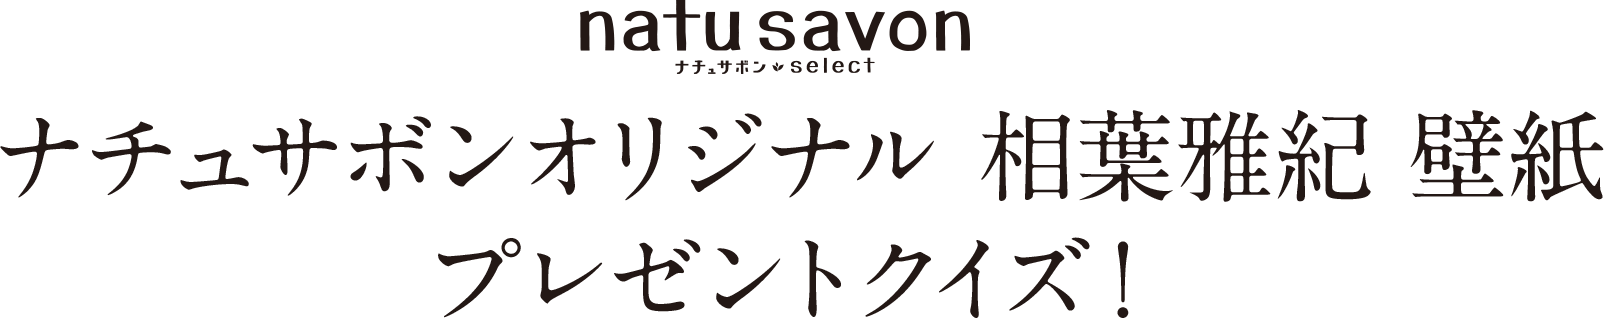 ソフティモ ナチュサボンセレクト Natu Savon Select コーセーコスメポート